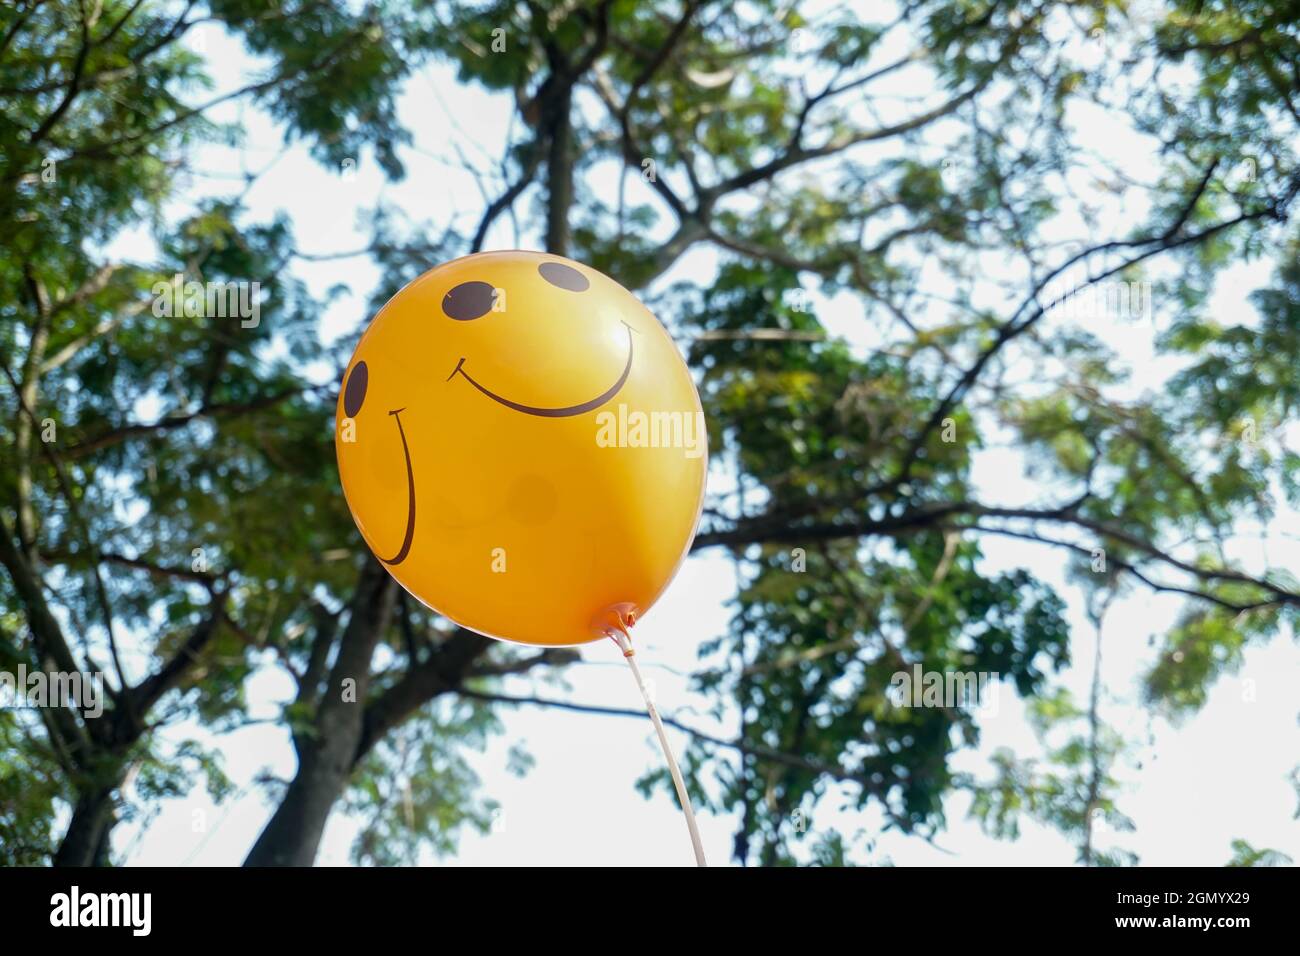 smiley balloon on green bokeh background Stock Photo